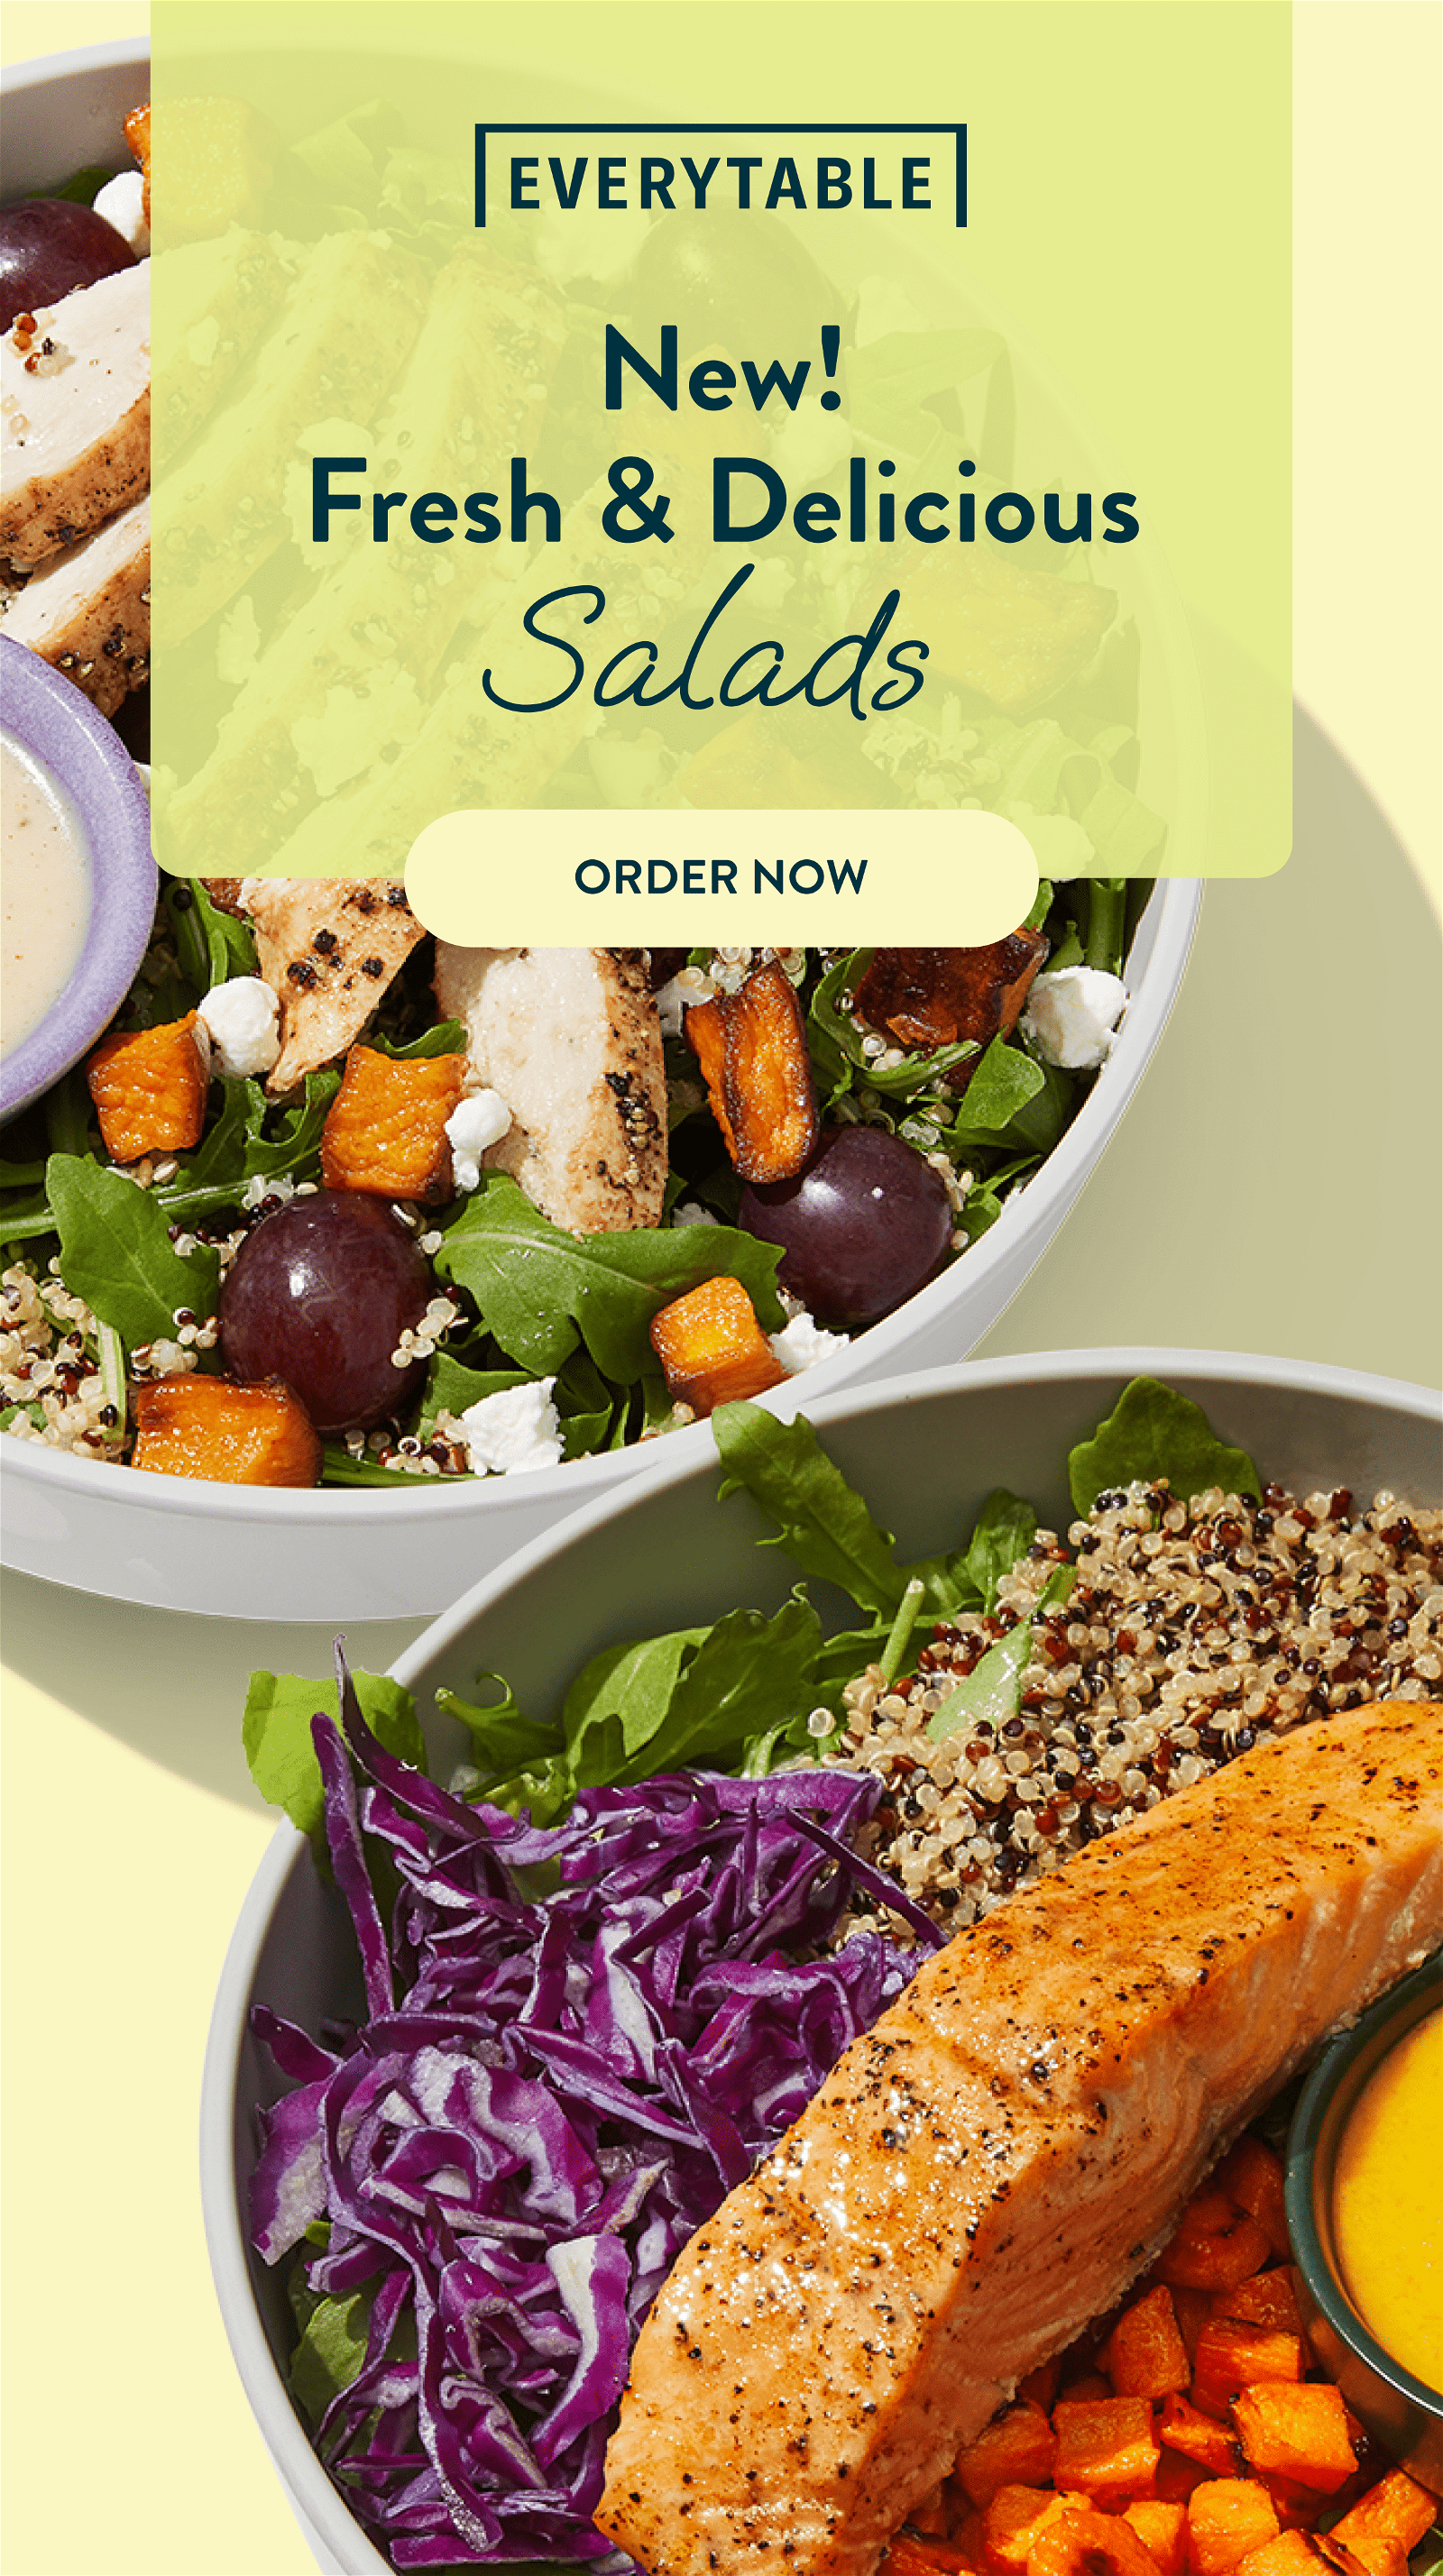 New Salads!